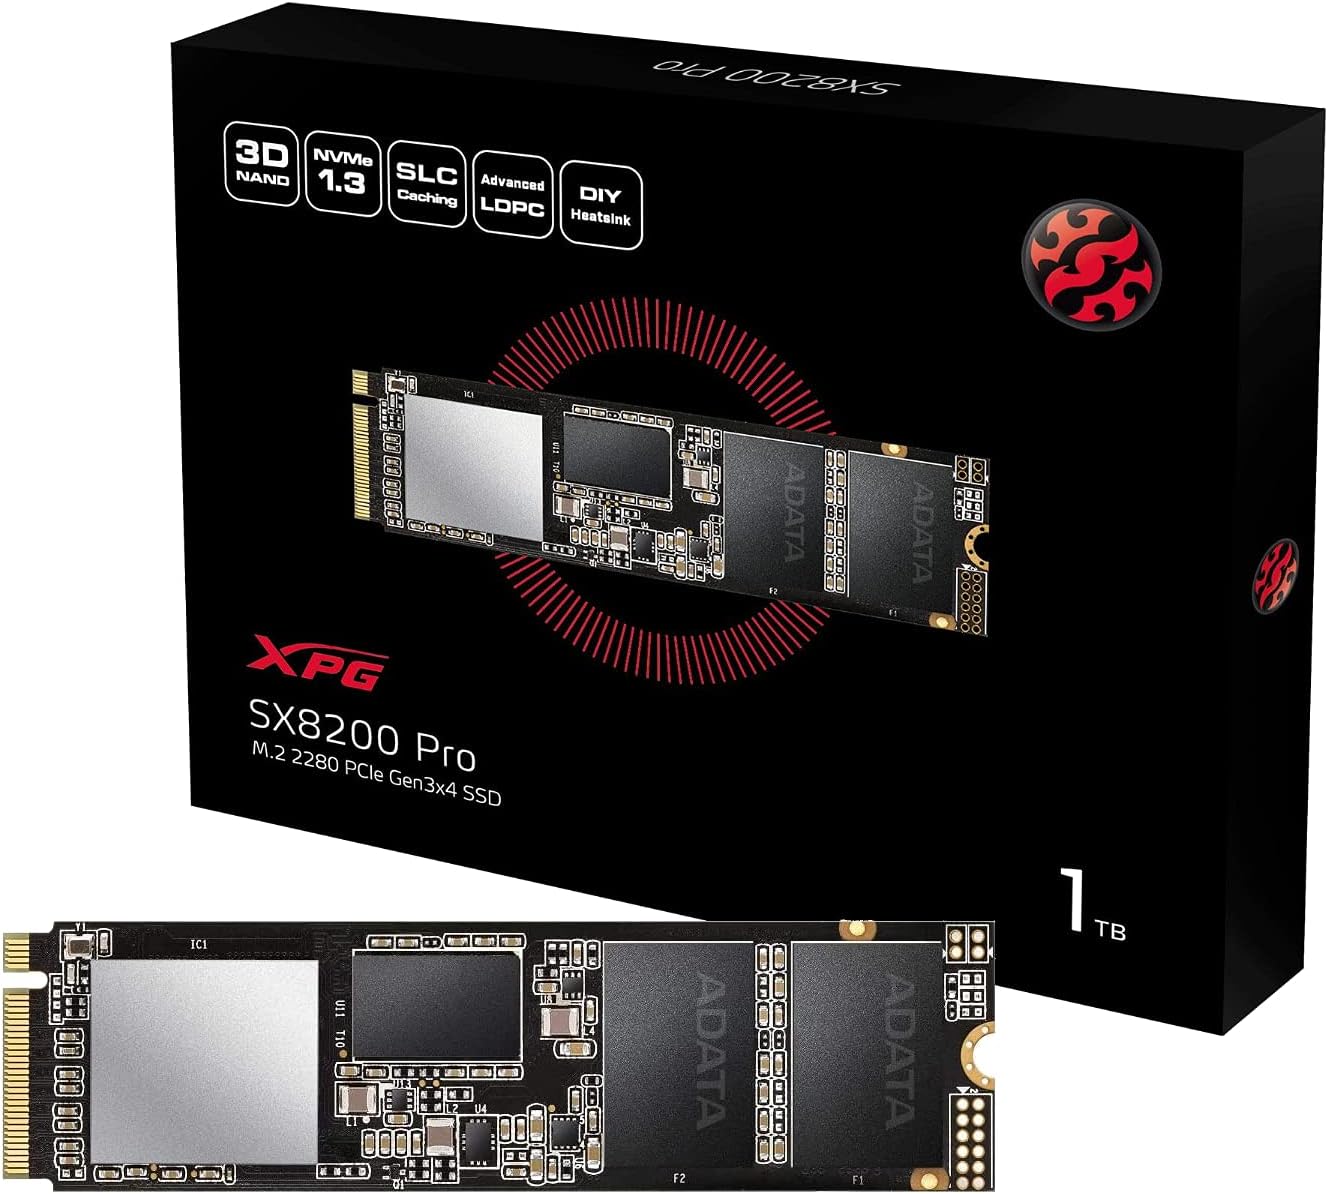 ADATA XPG SX8200 Pro 1TB 3D NAND NVMe Gen3x4 PCIe M.2 2280 Solid State Drive R/W 3500/3000MB/s SSD (ASX8200PNP-1TT-C) $64.99